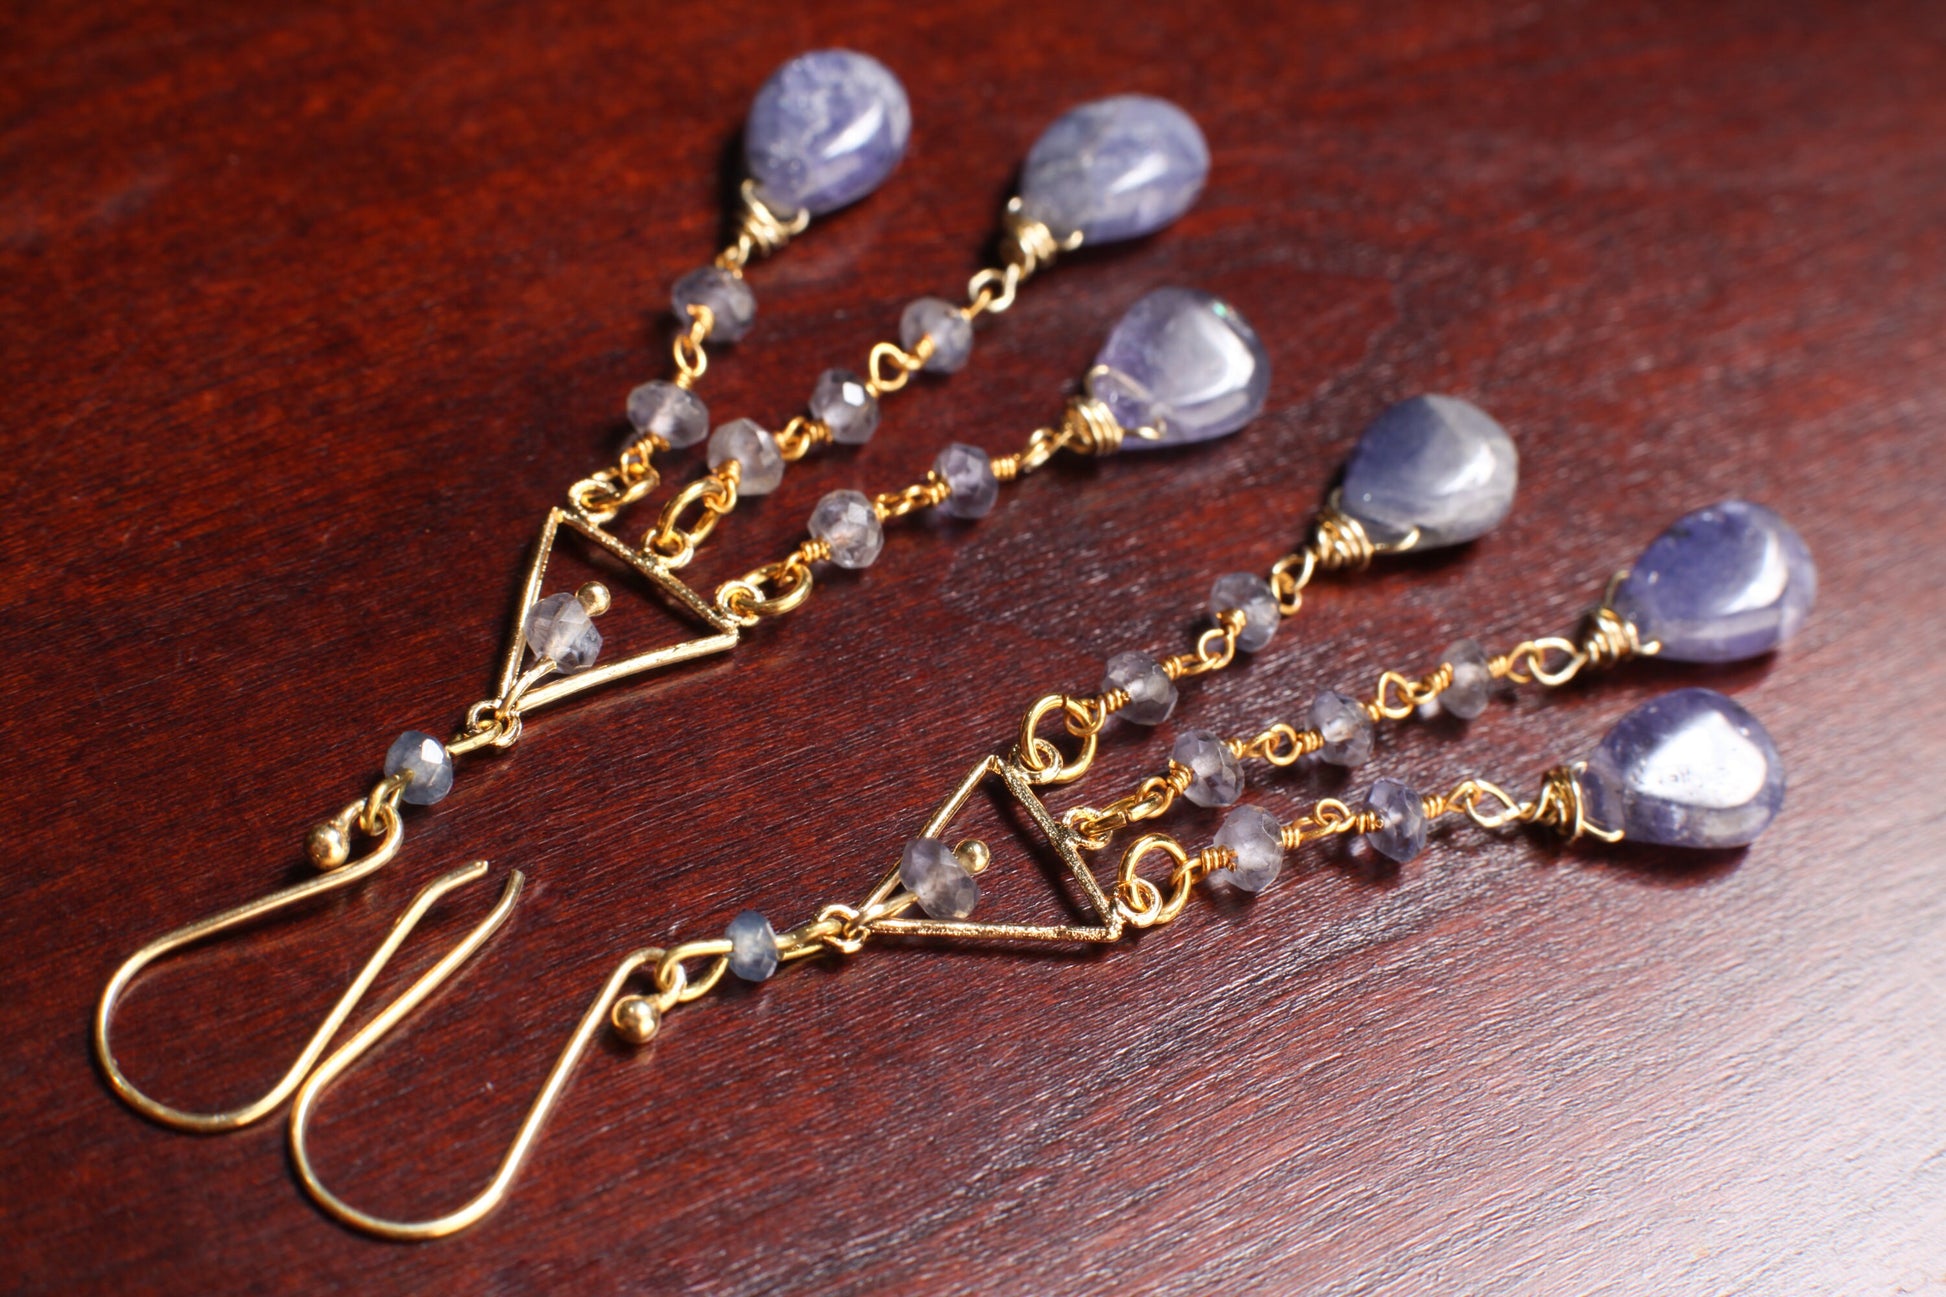 Tanzanite Chandelier Dangling Teardrop 8x12mm Earrings in Gold Vermeil Over 925 Sterling Silver Hook Earwire